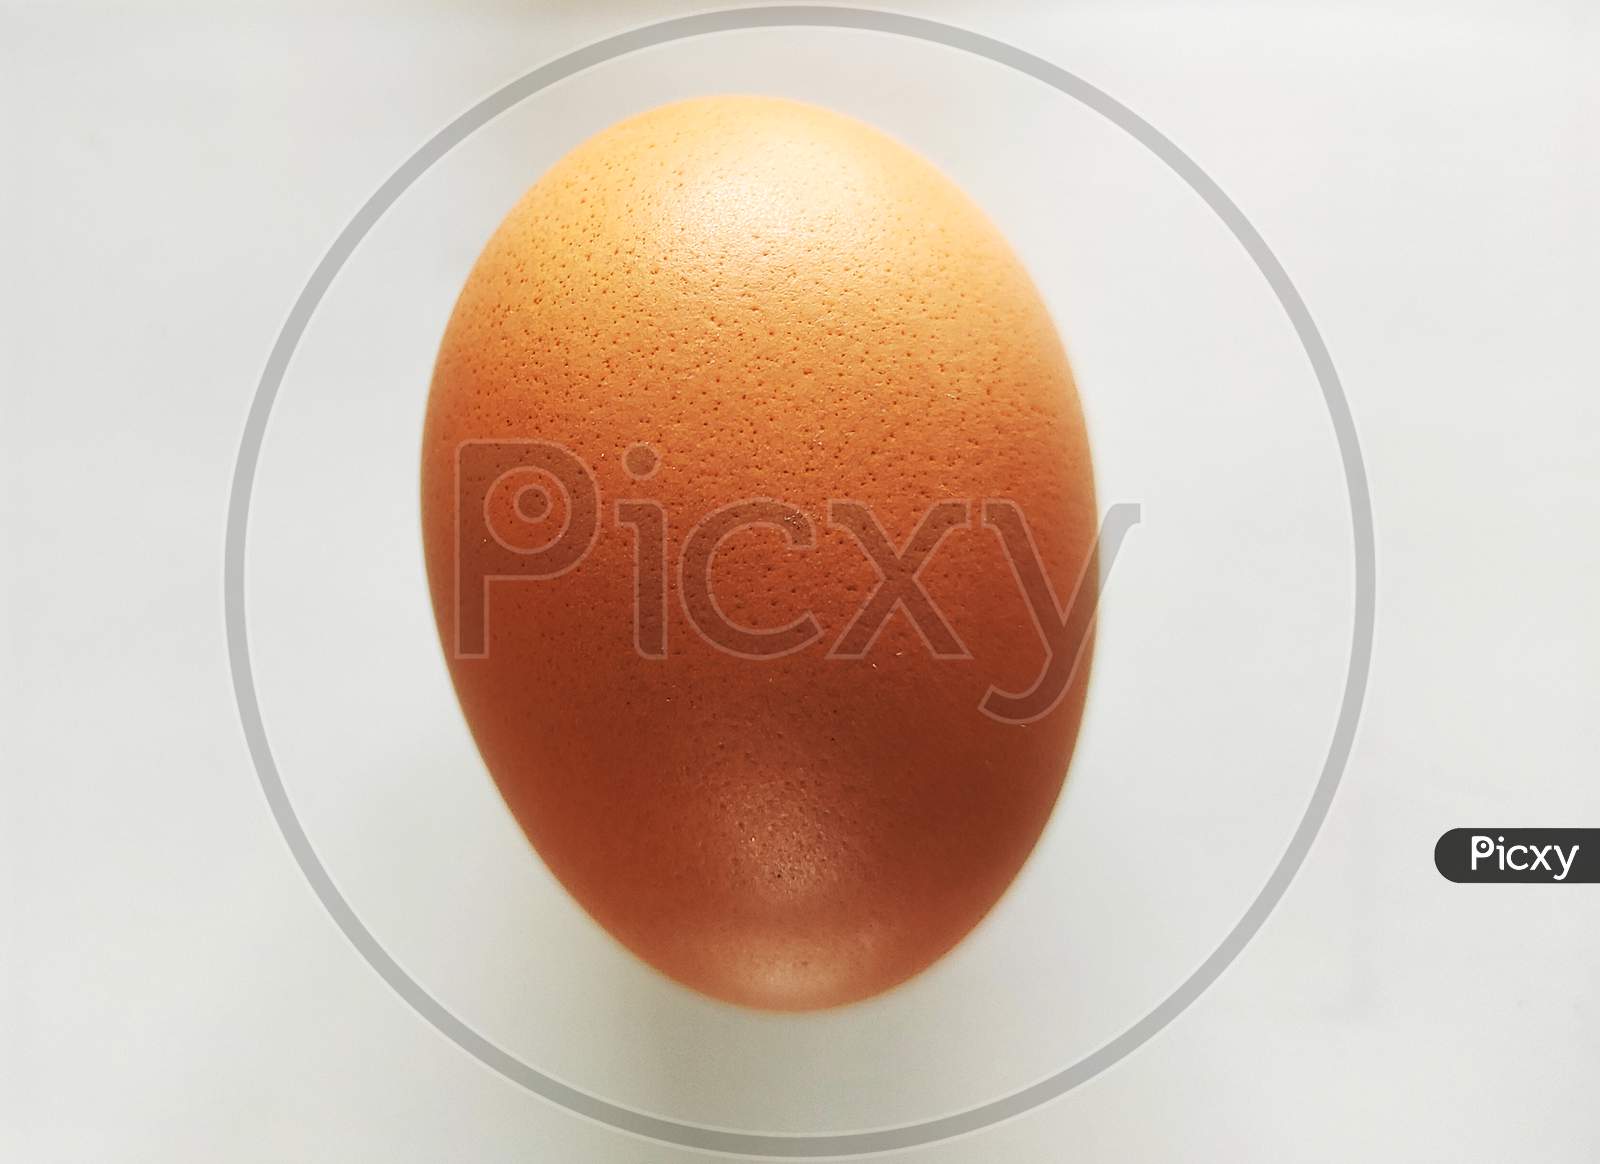 Closeup View Of An Egg